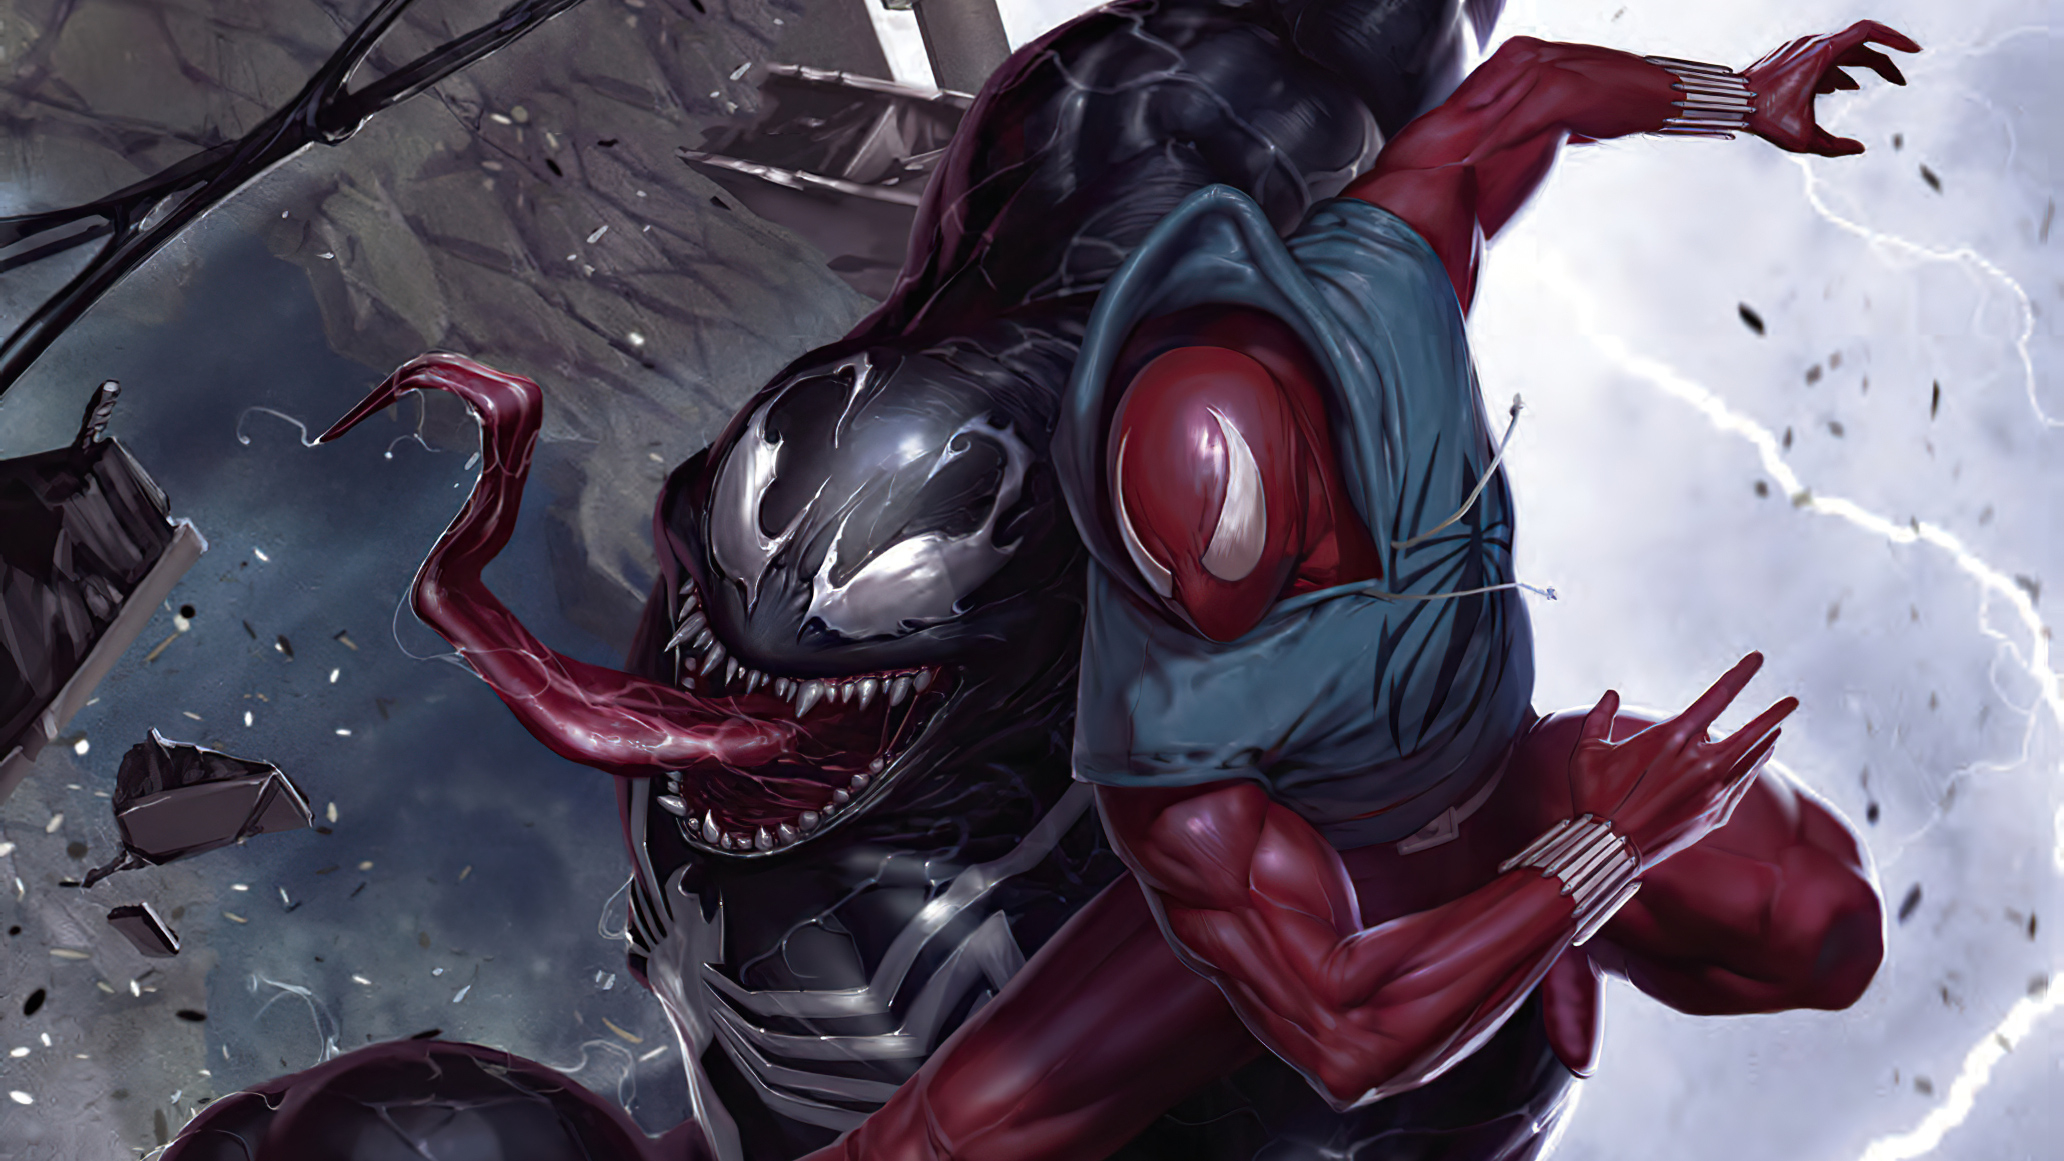 Spider-Man vs Venom Comic Art Marvel Wallpaper.